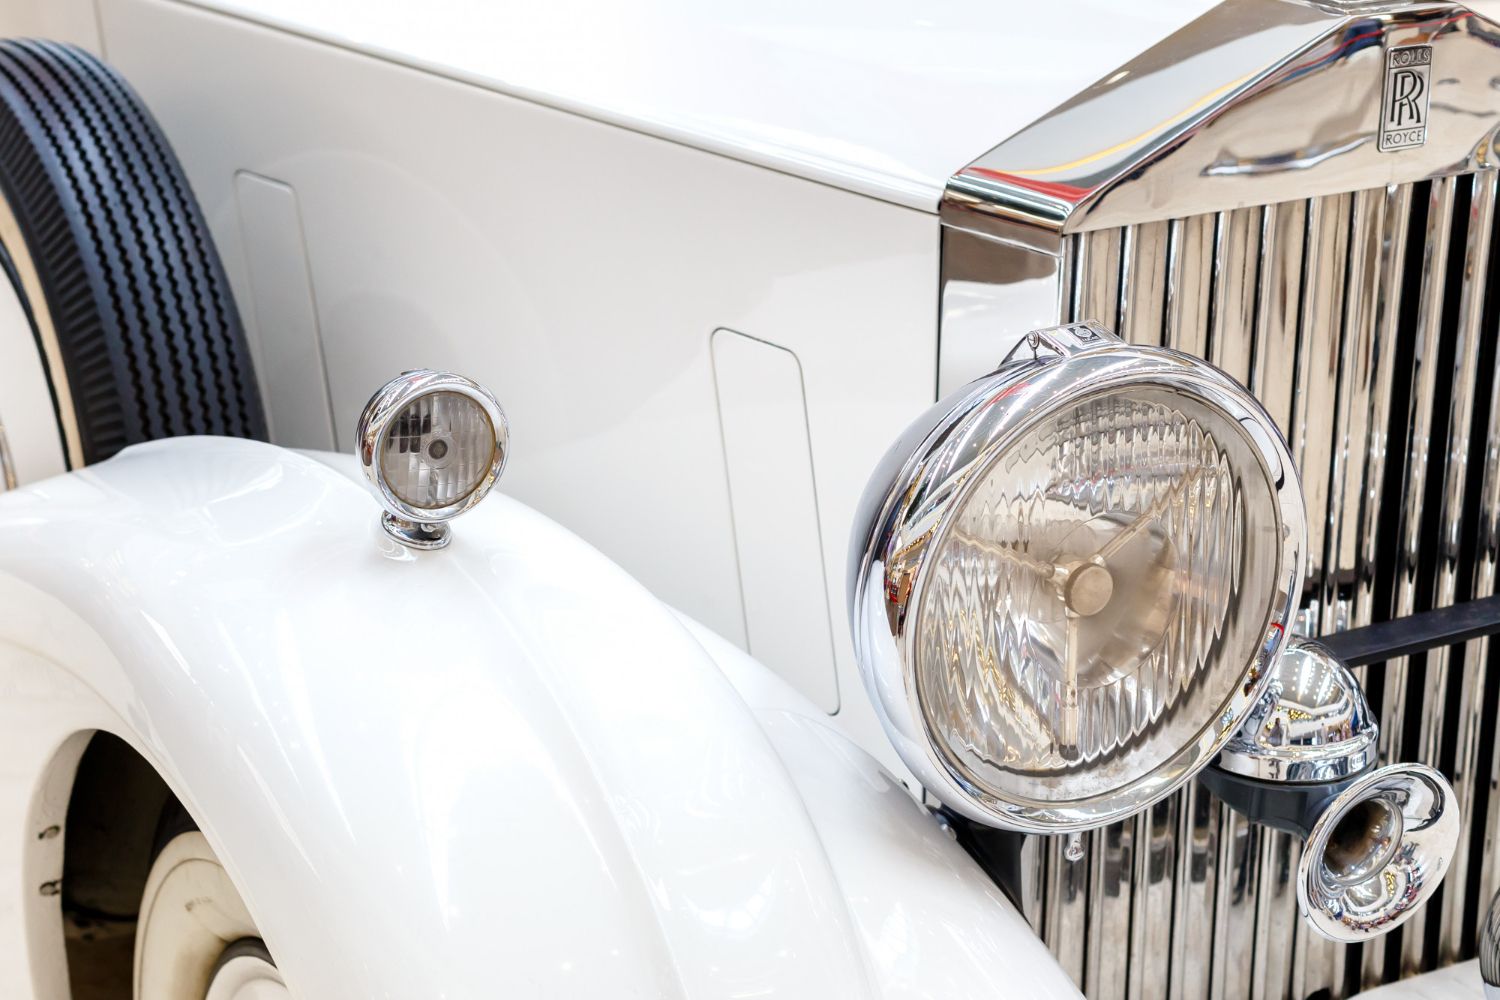 A Rolls-Royce márka kis figurája - egy igazi tragikus történet